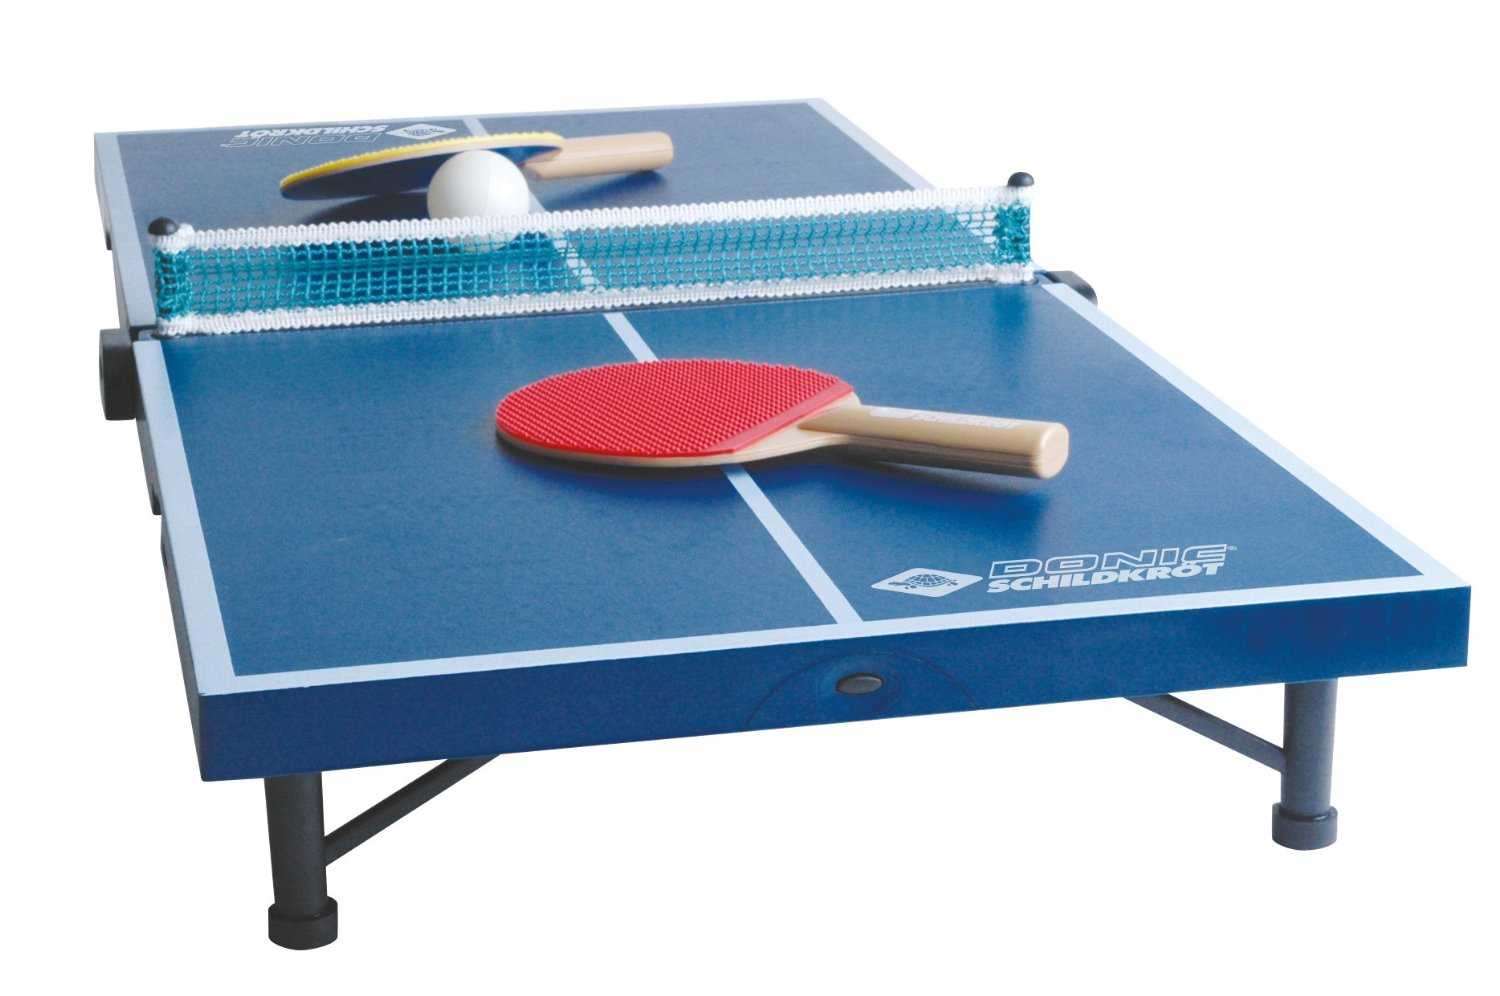 Домашний настольный теннис. Теннисный стол Donic 230222-g. Теннисный стол wips Mini с сеткой. Теннисный стол ARTENGO. Mini Table Tennis Table.